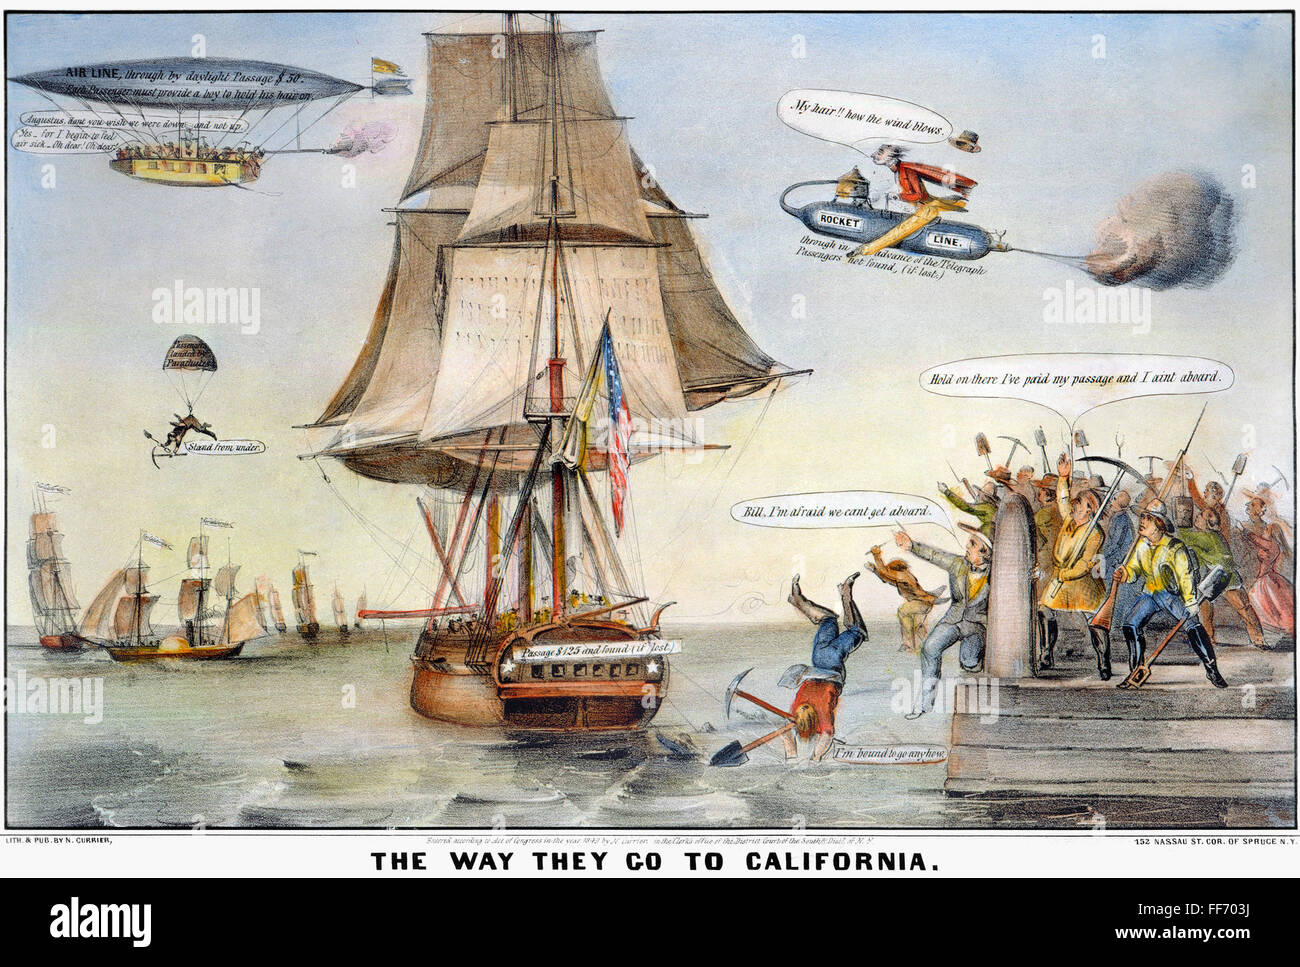 GOLD RUSH CARTOON, 1849. /N'Tha modo di andare in California." Caricatura del desiderio di orientali per raggiungere i campi di oro in California. Litografia di Nathaniel Currier, 1849. Foto Stock